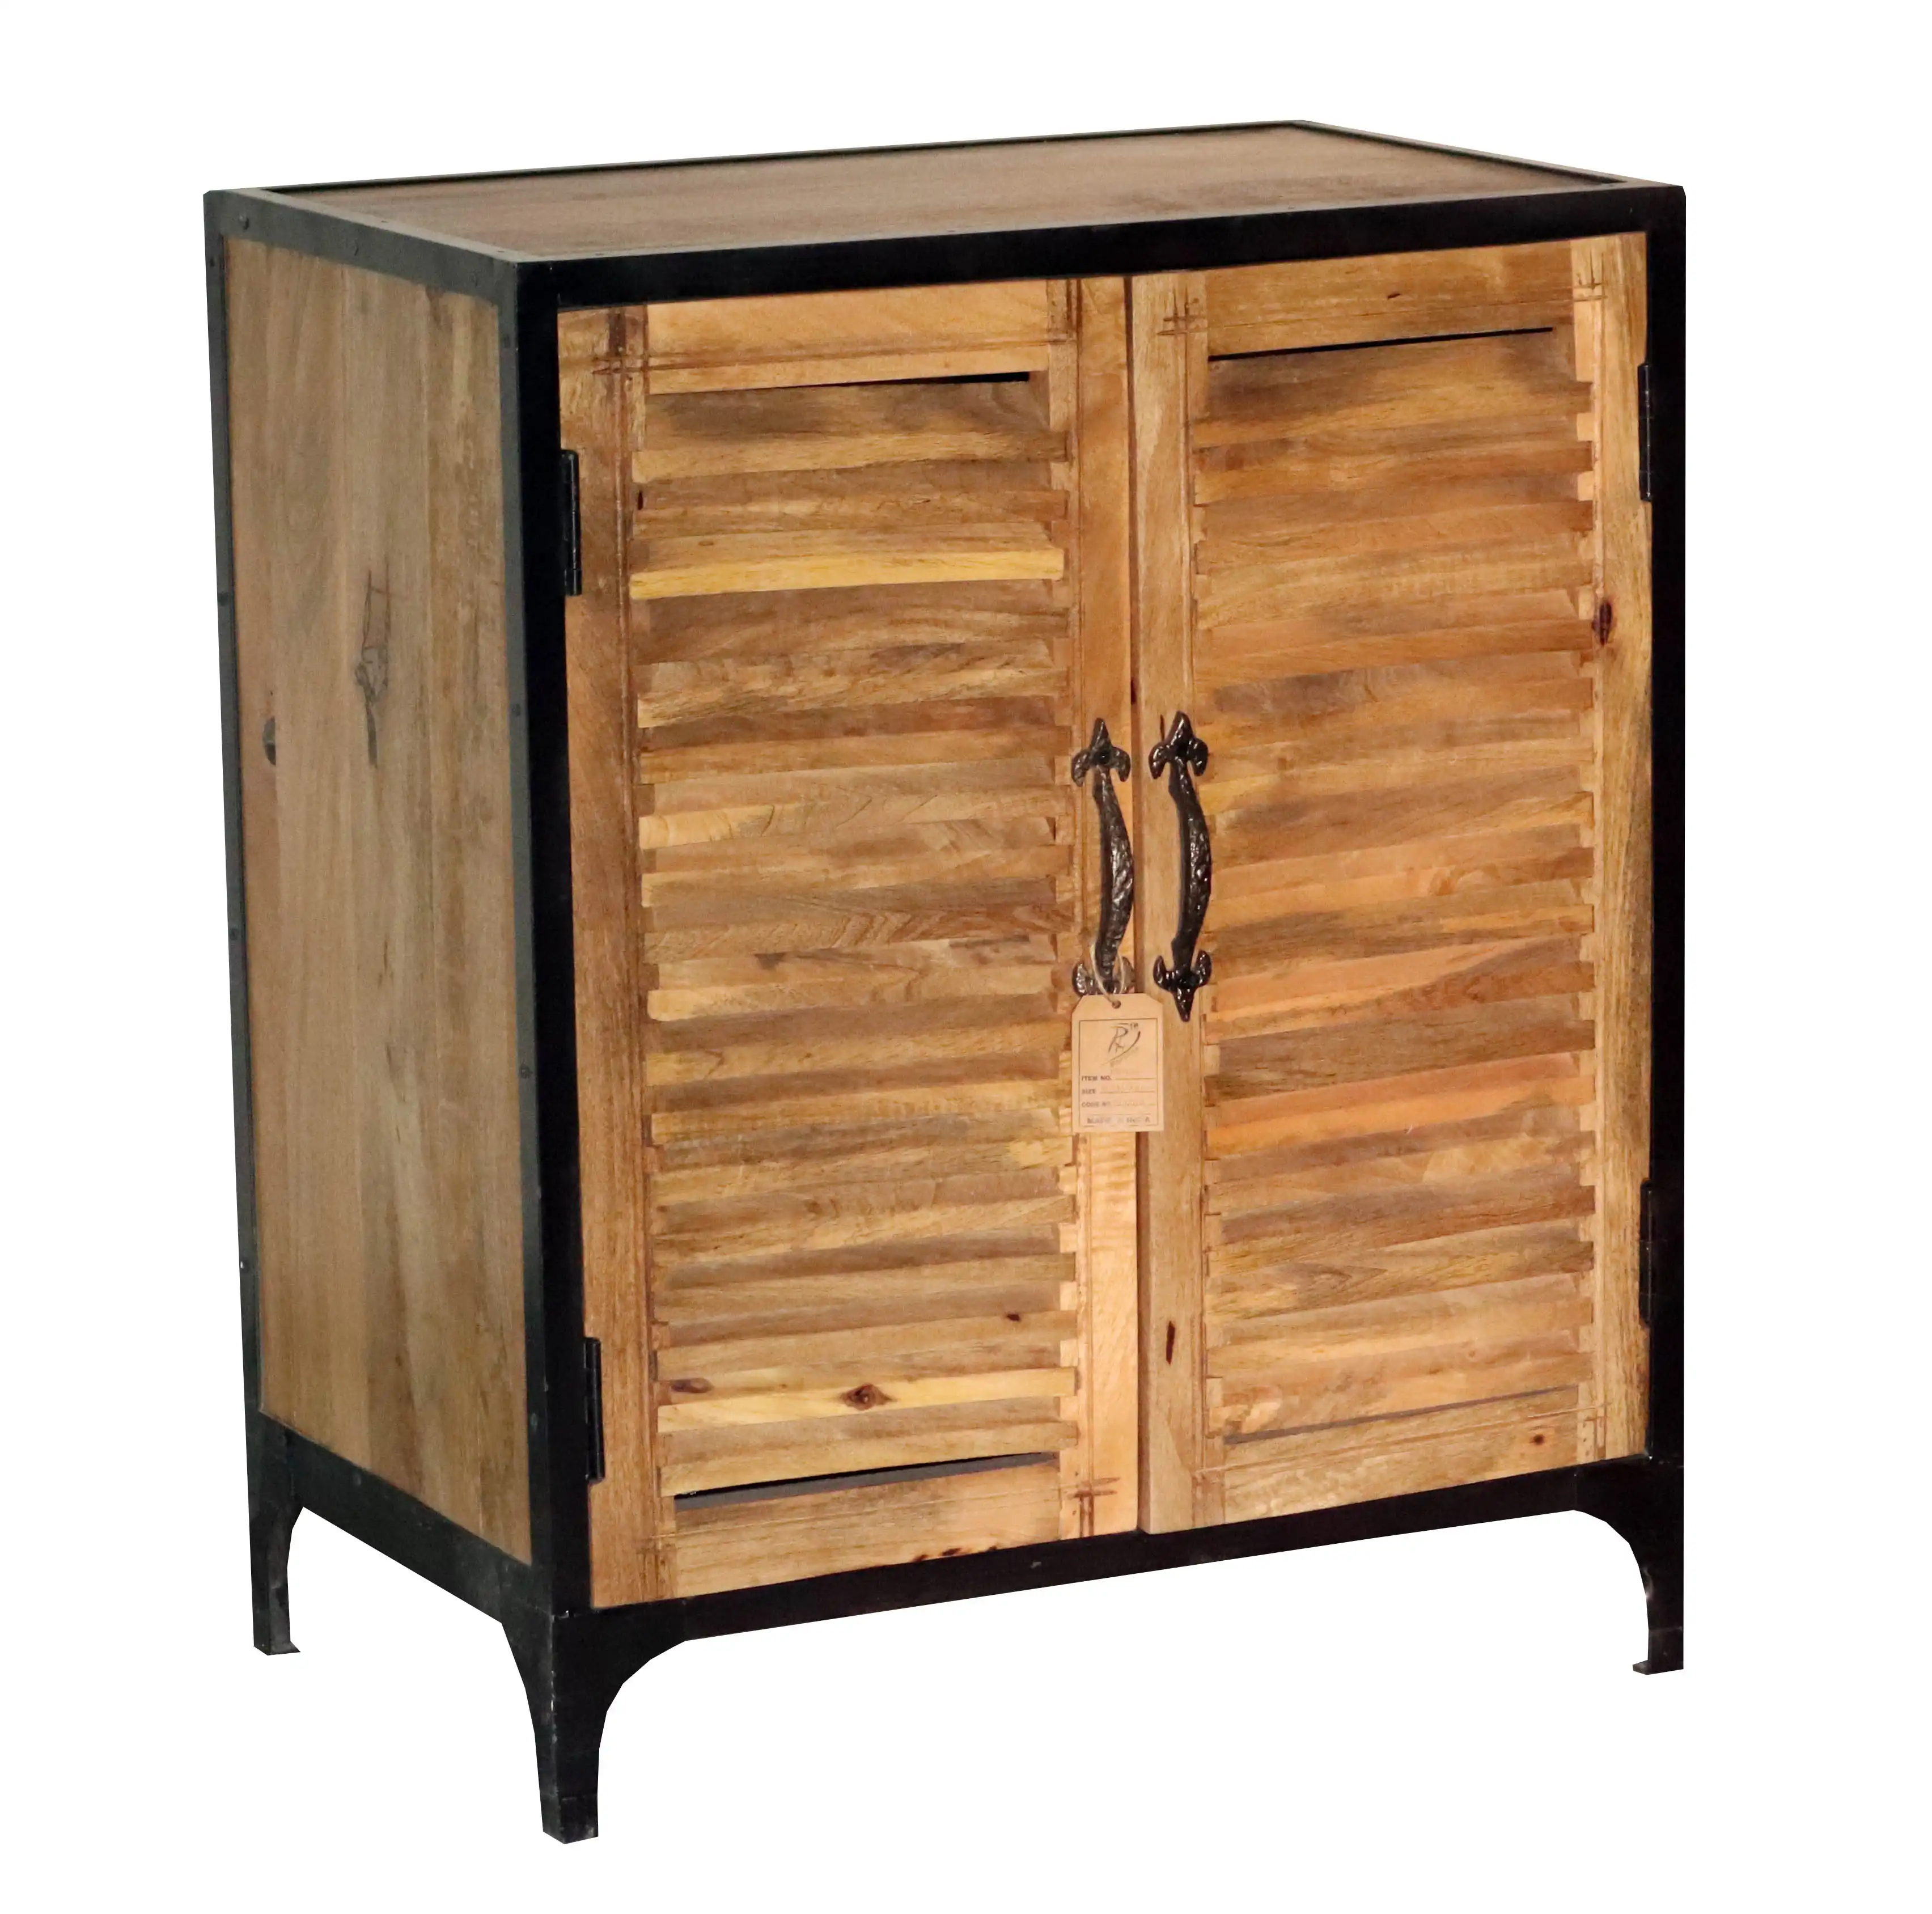 Wooden & Iron Industrial Sideboard with 2 Shutter Doors - popular handicrafts